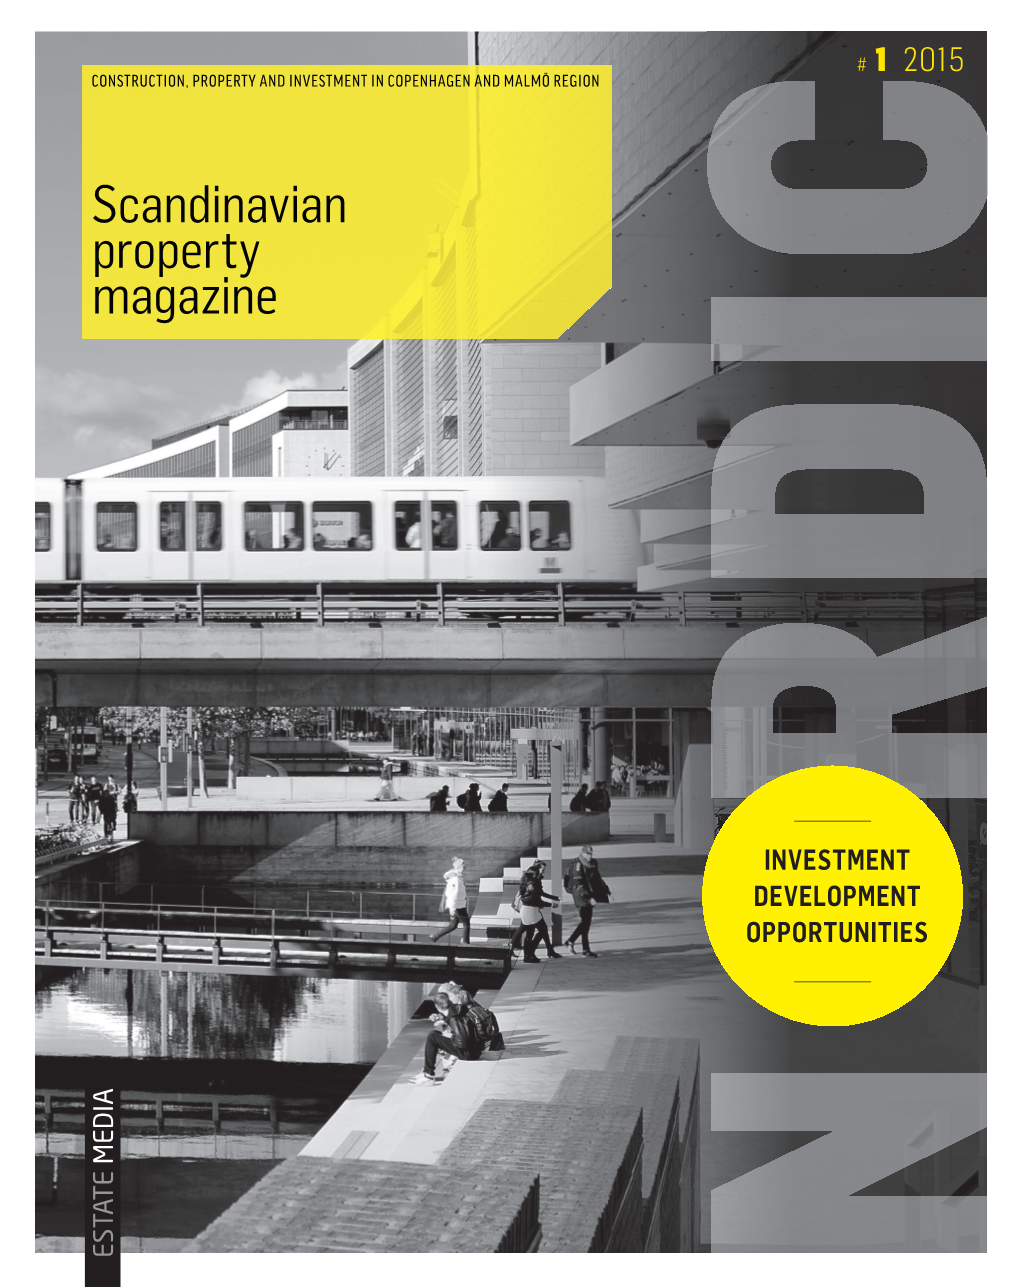 Udlejning Magazine Scandinavian Property LARSBJØRNSSTRÆDE · 1454 KØBENHAVN K AMAGER STRANDPARK · 2300 KØBENHAVN S Scandinavian Property Magazine | No 1 2015